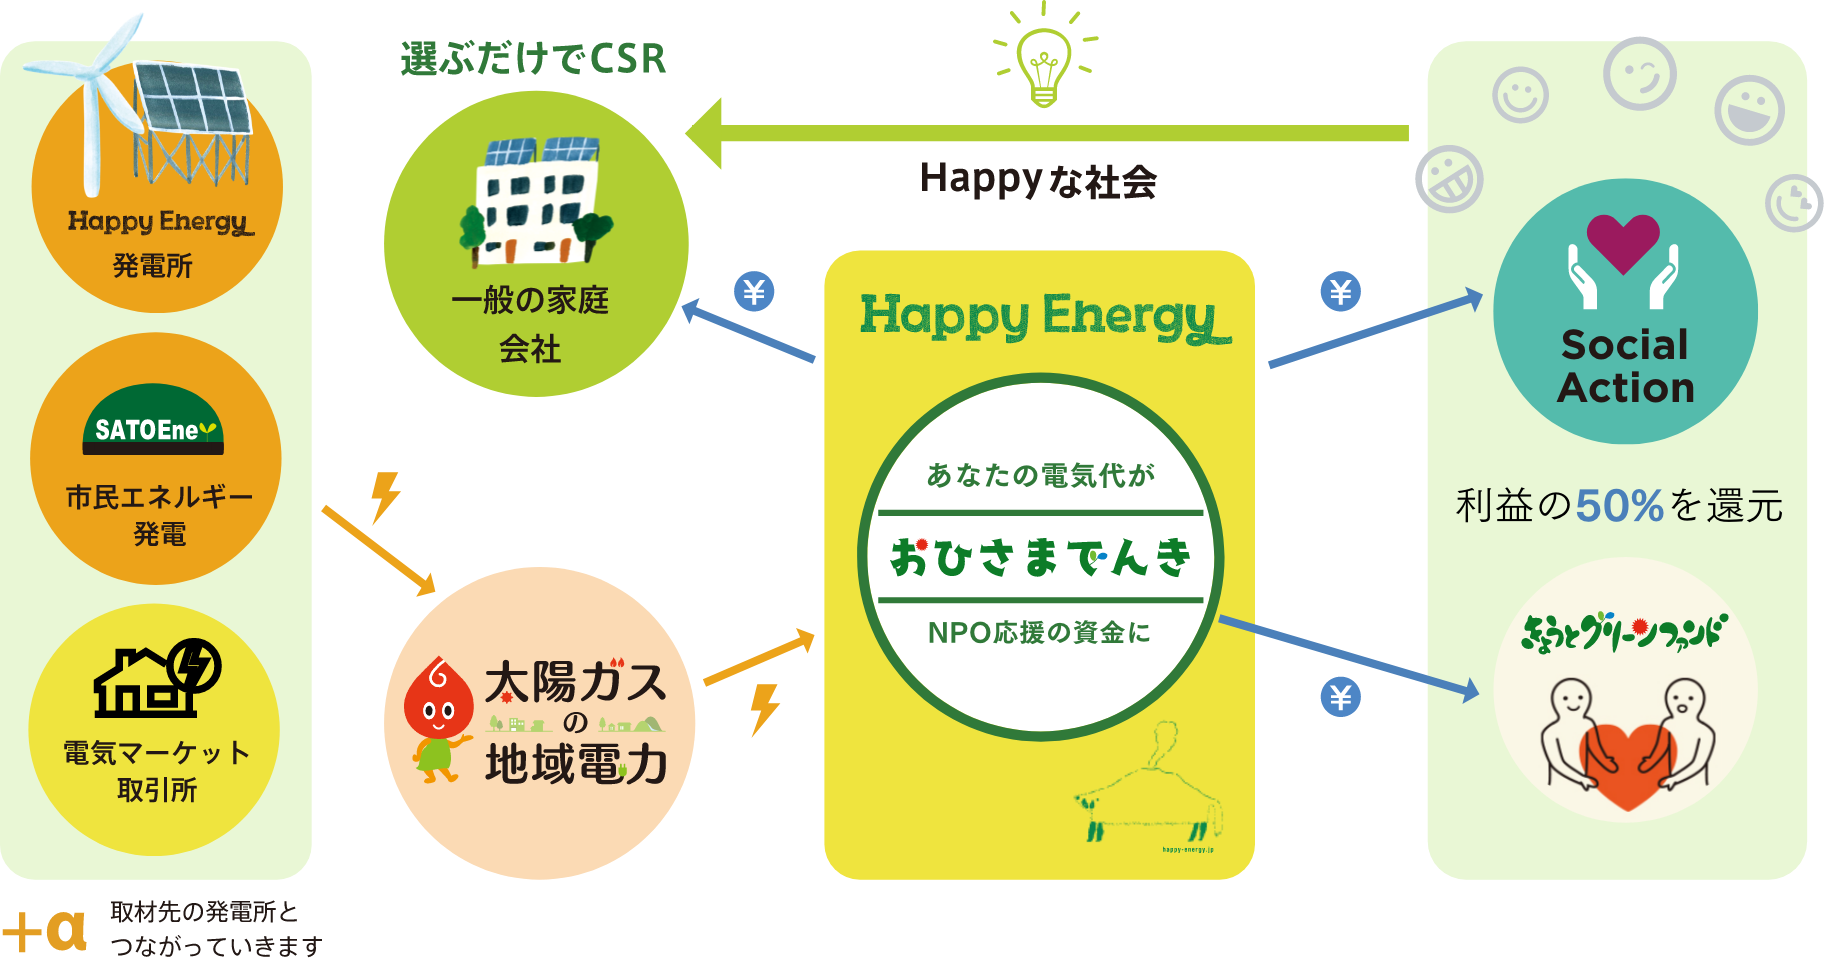 選ぶだけでCSR、東京電力より電気代3%OFF、HAPPYな社会、あなたの電気代から再エネの発電所がうまれます！利益の50％を還元。